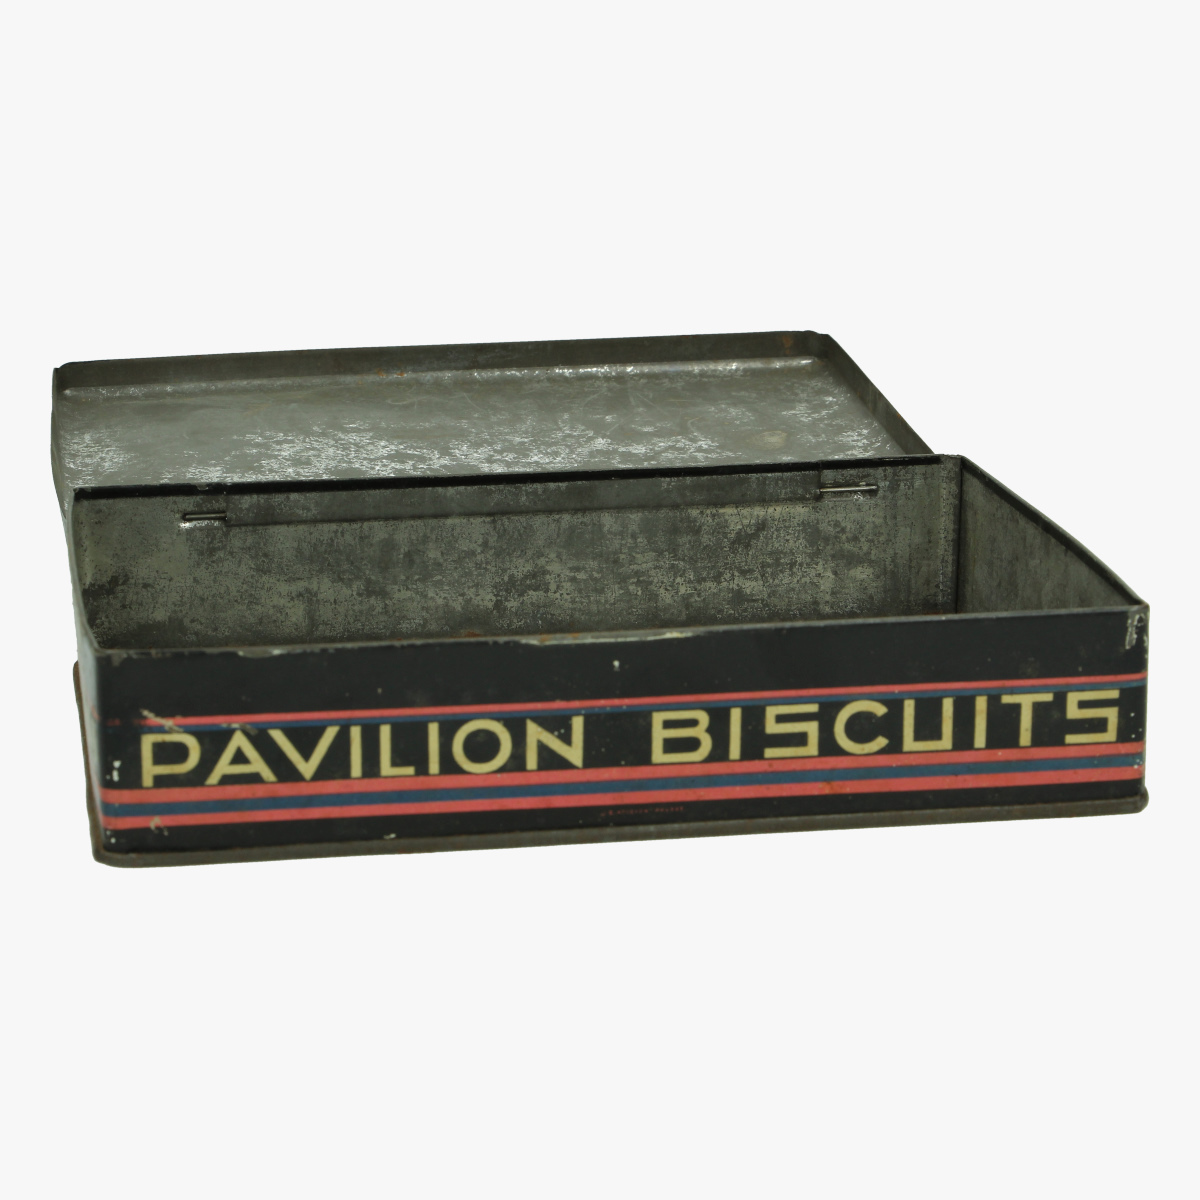 Afbeeldingen van expo 58 de beukelaer biscuits antwerpen pavilion biscuits